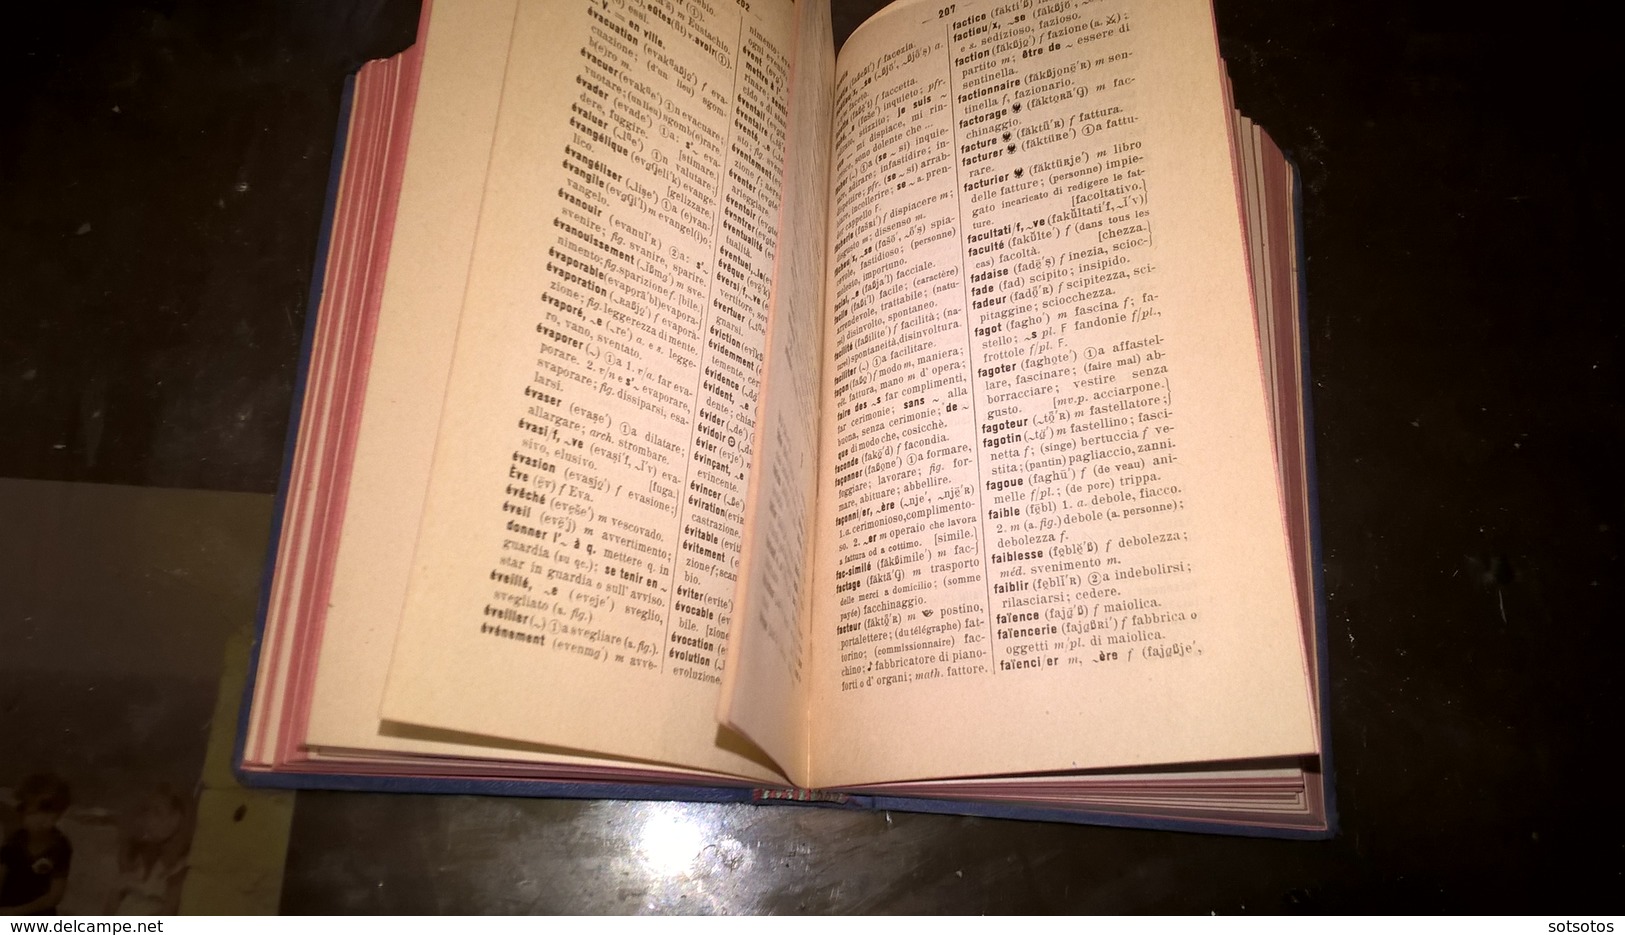 FRANCAIS-ITALIEN _  FRANCESE6ITALIANO DICTIONNAIRE par Gaston Le BOUCHER.  (1911) Ed. FONOLEXIKA  - 560 pages (10Χ15,50